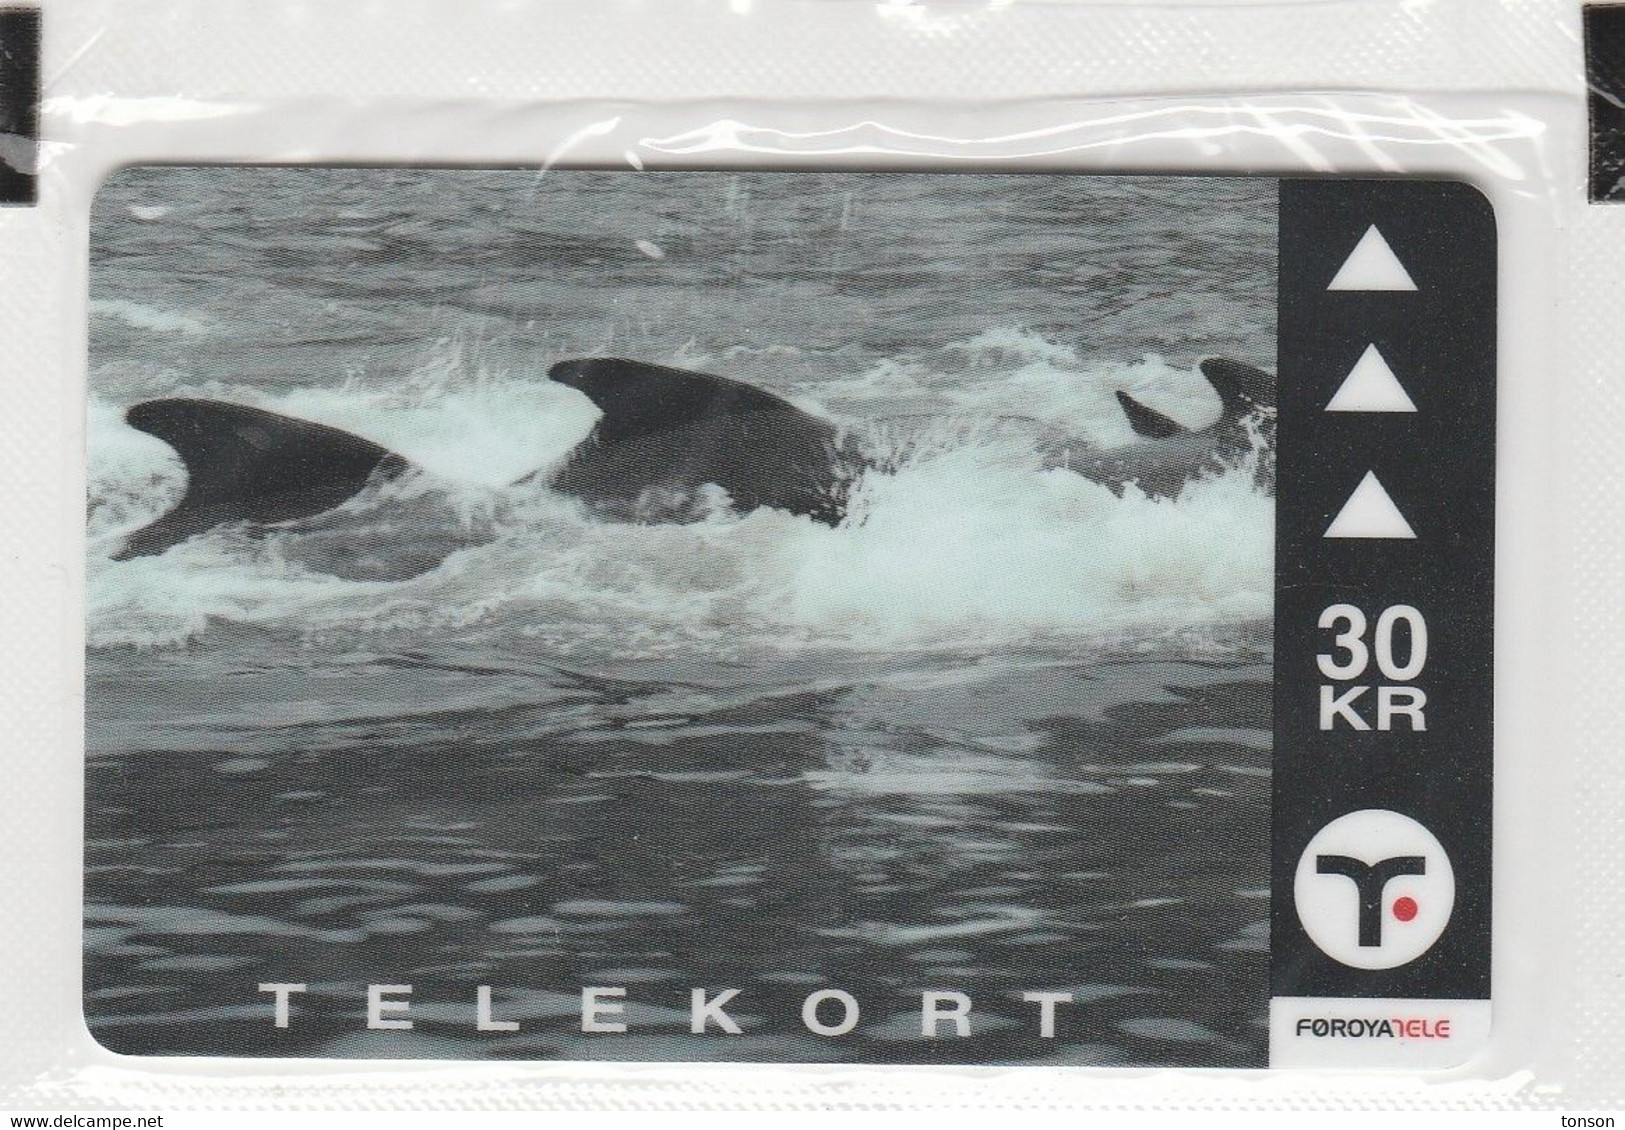 Faroe Islands, OD-030,  30 Kr , Pilot Whales 1, Mint In Blister, 2 Scans. - Faroe Islands